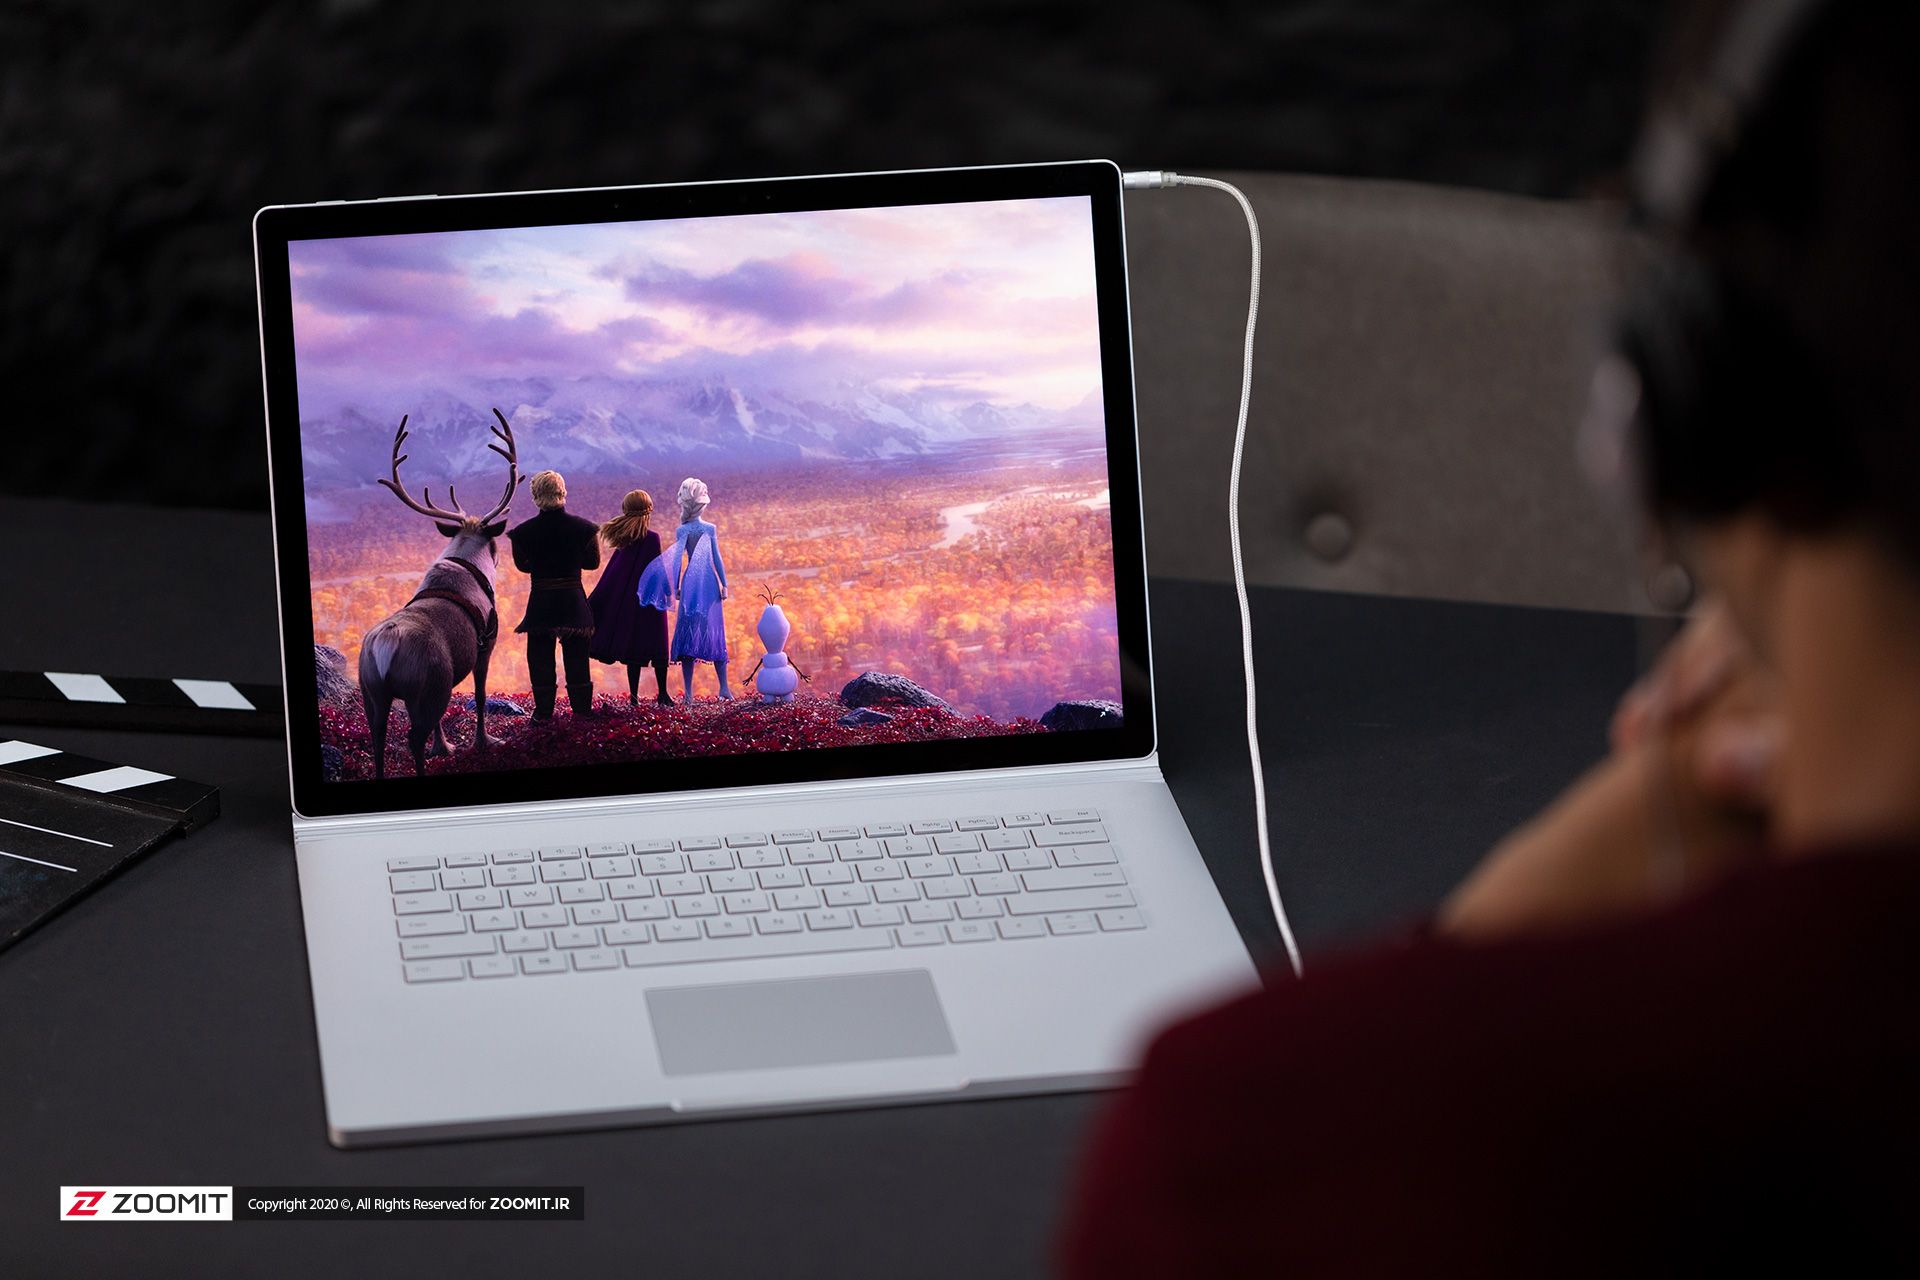 مرجع متخصصين ايران سرفيس بوك ۳ مايكروسافت / Microsoft Surface Book 3 در حال پخش فيلم